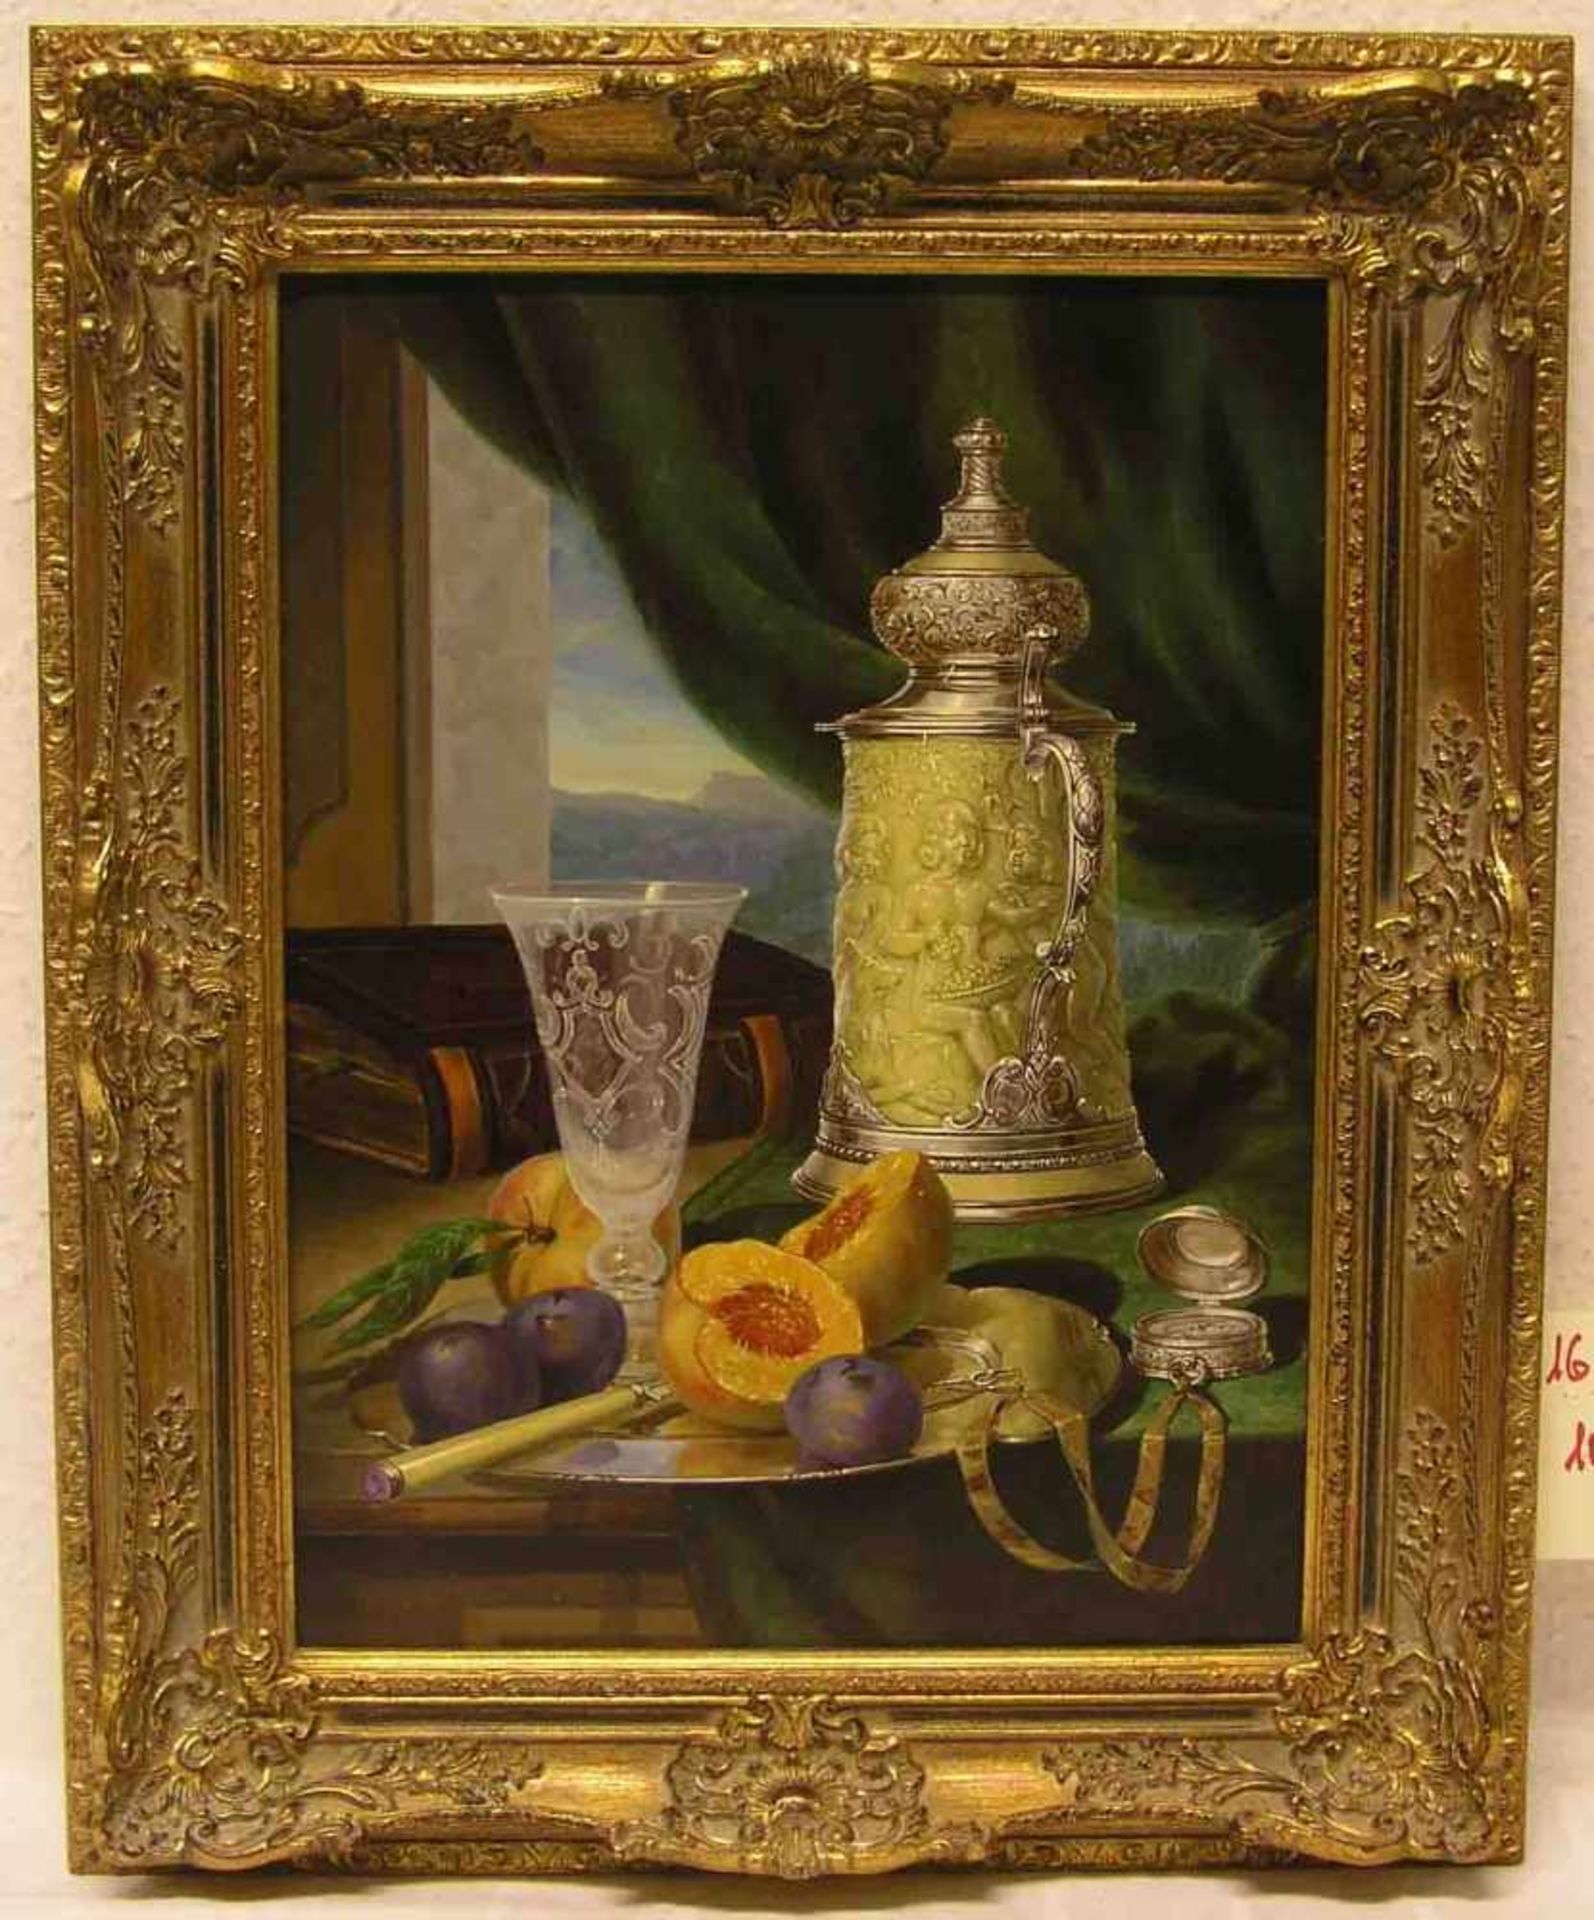 Boros, Jozsef, ungarischer Maler, geb. 1944 in Zsambék: "Stillleben im barocken Stil".Öl/Holzplatte,